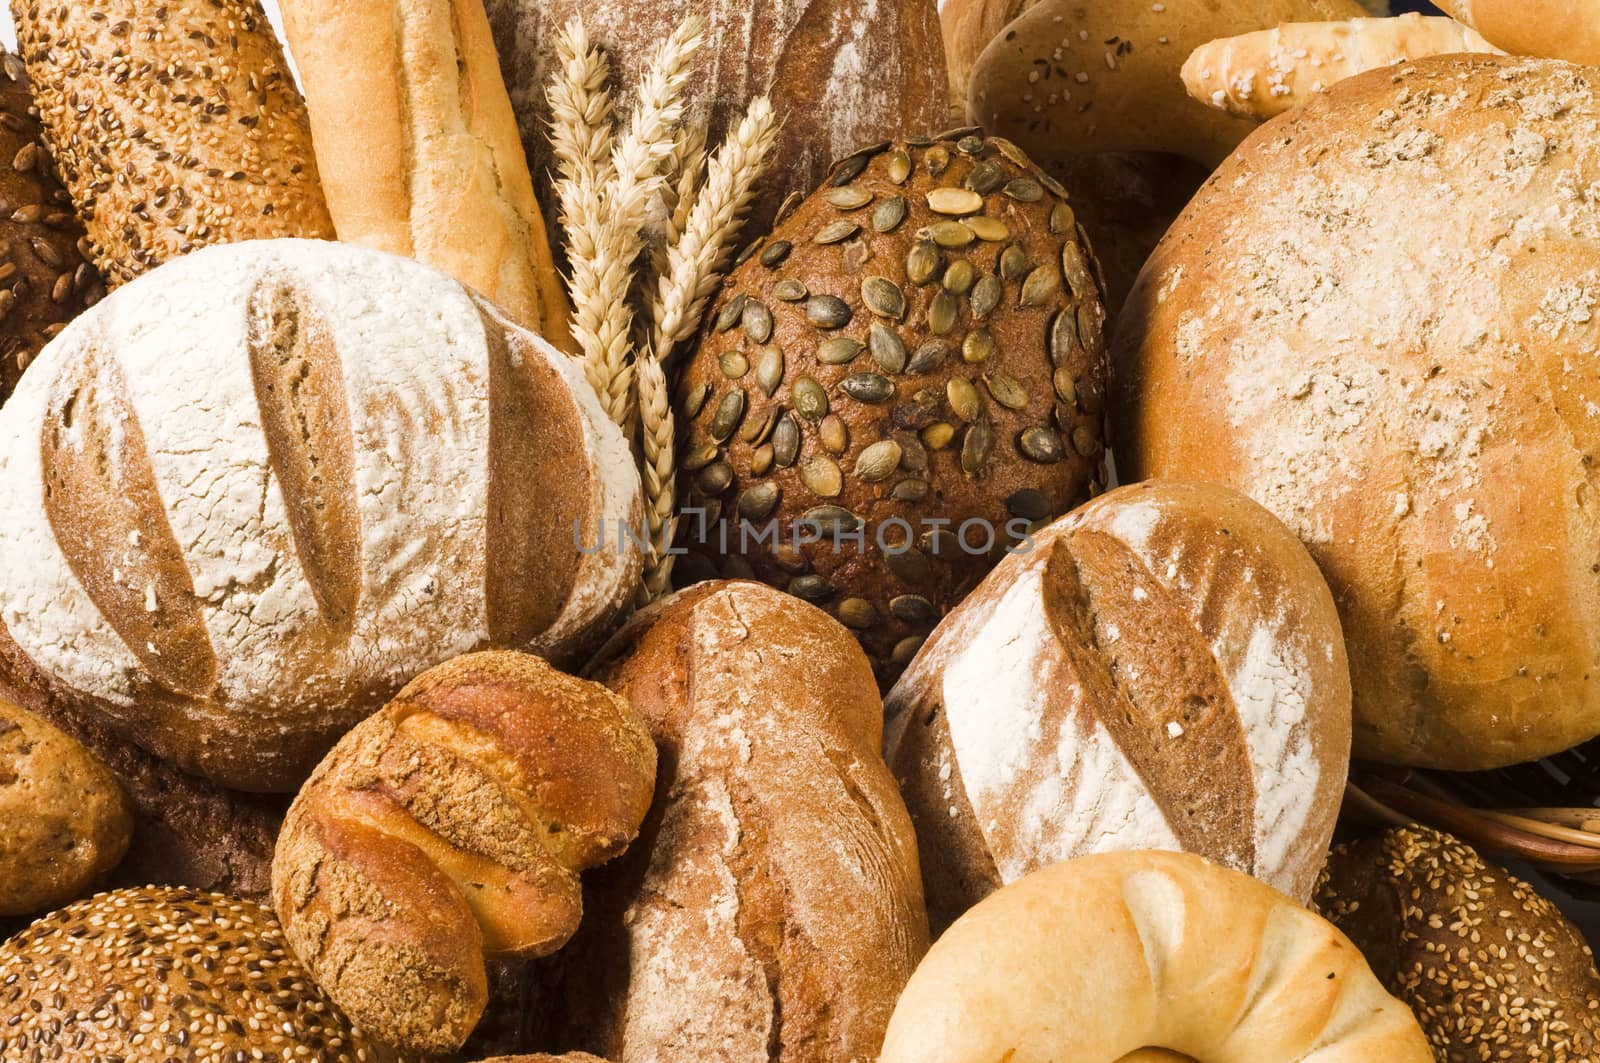 Variety of bread - full frame